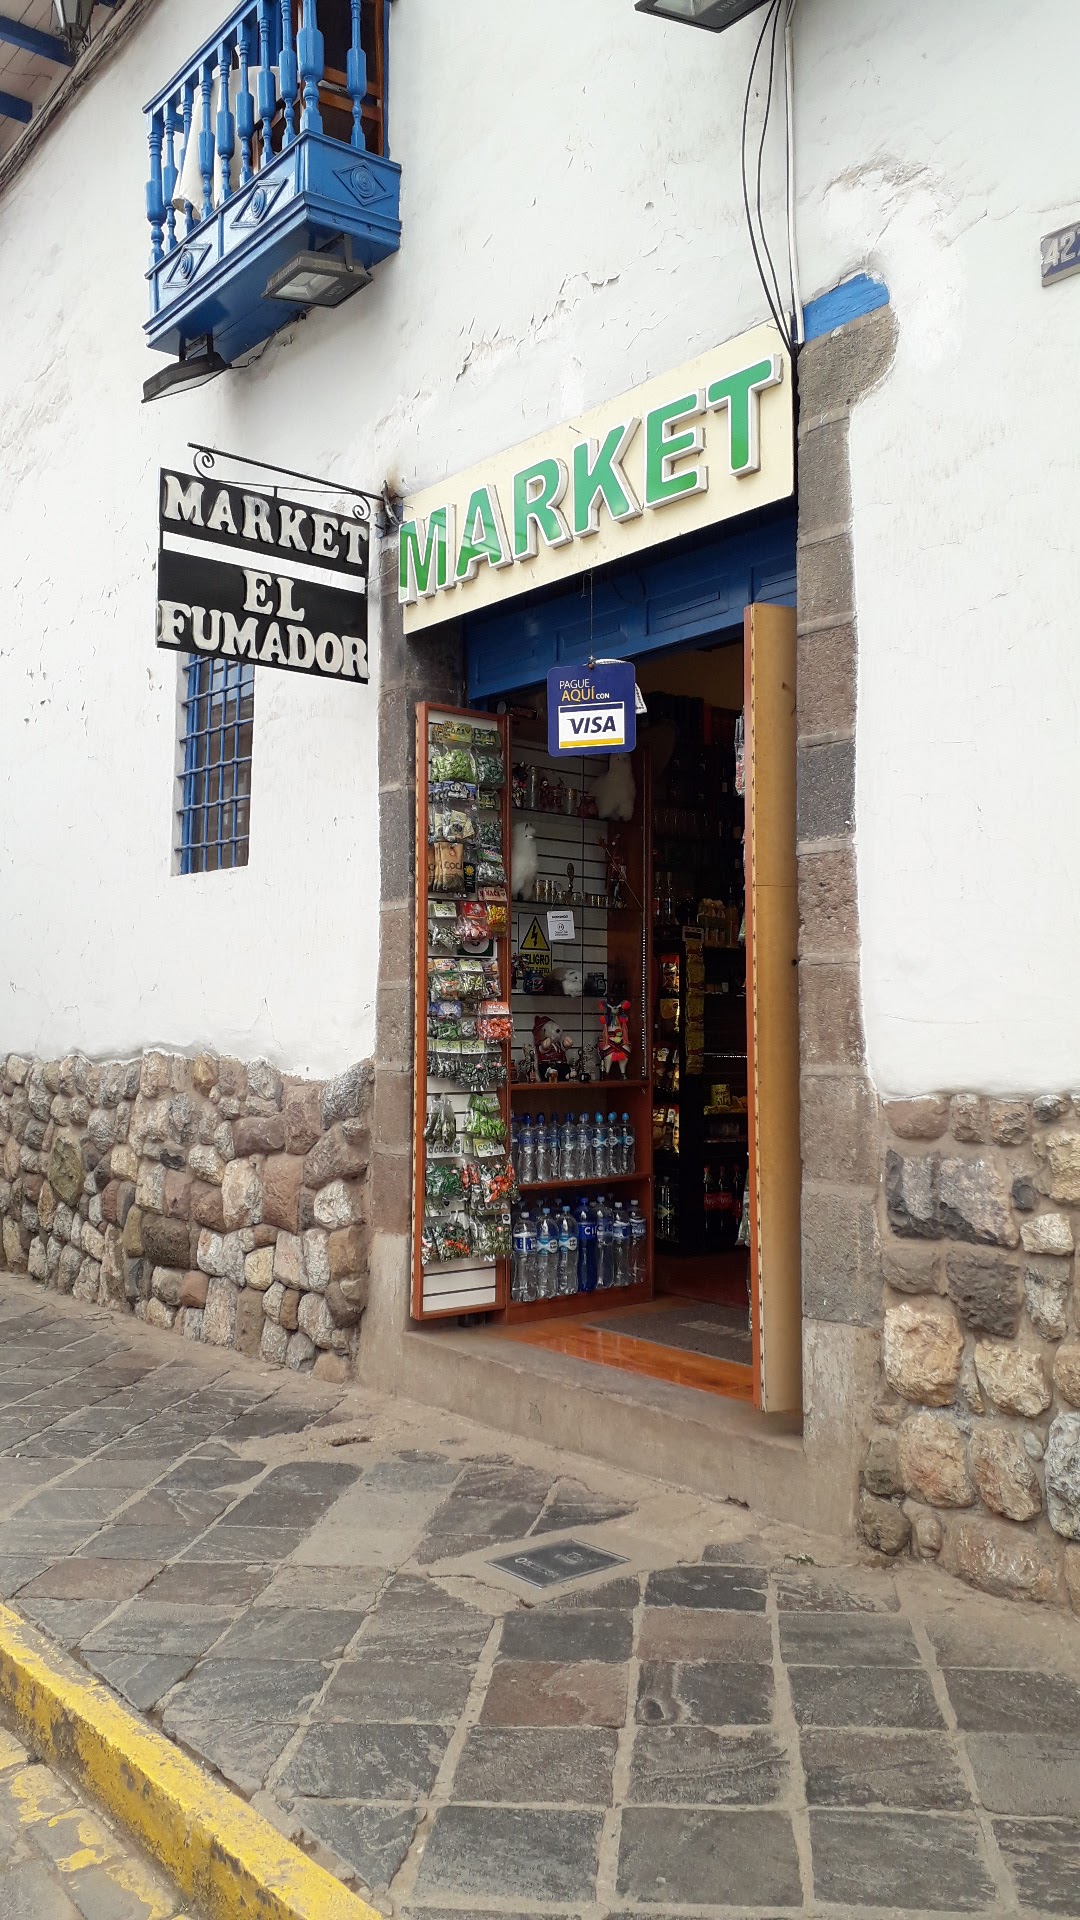 Market el FUMADOR